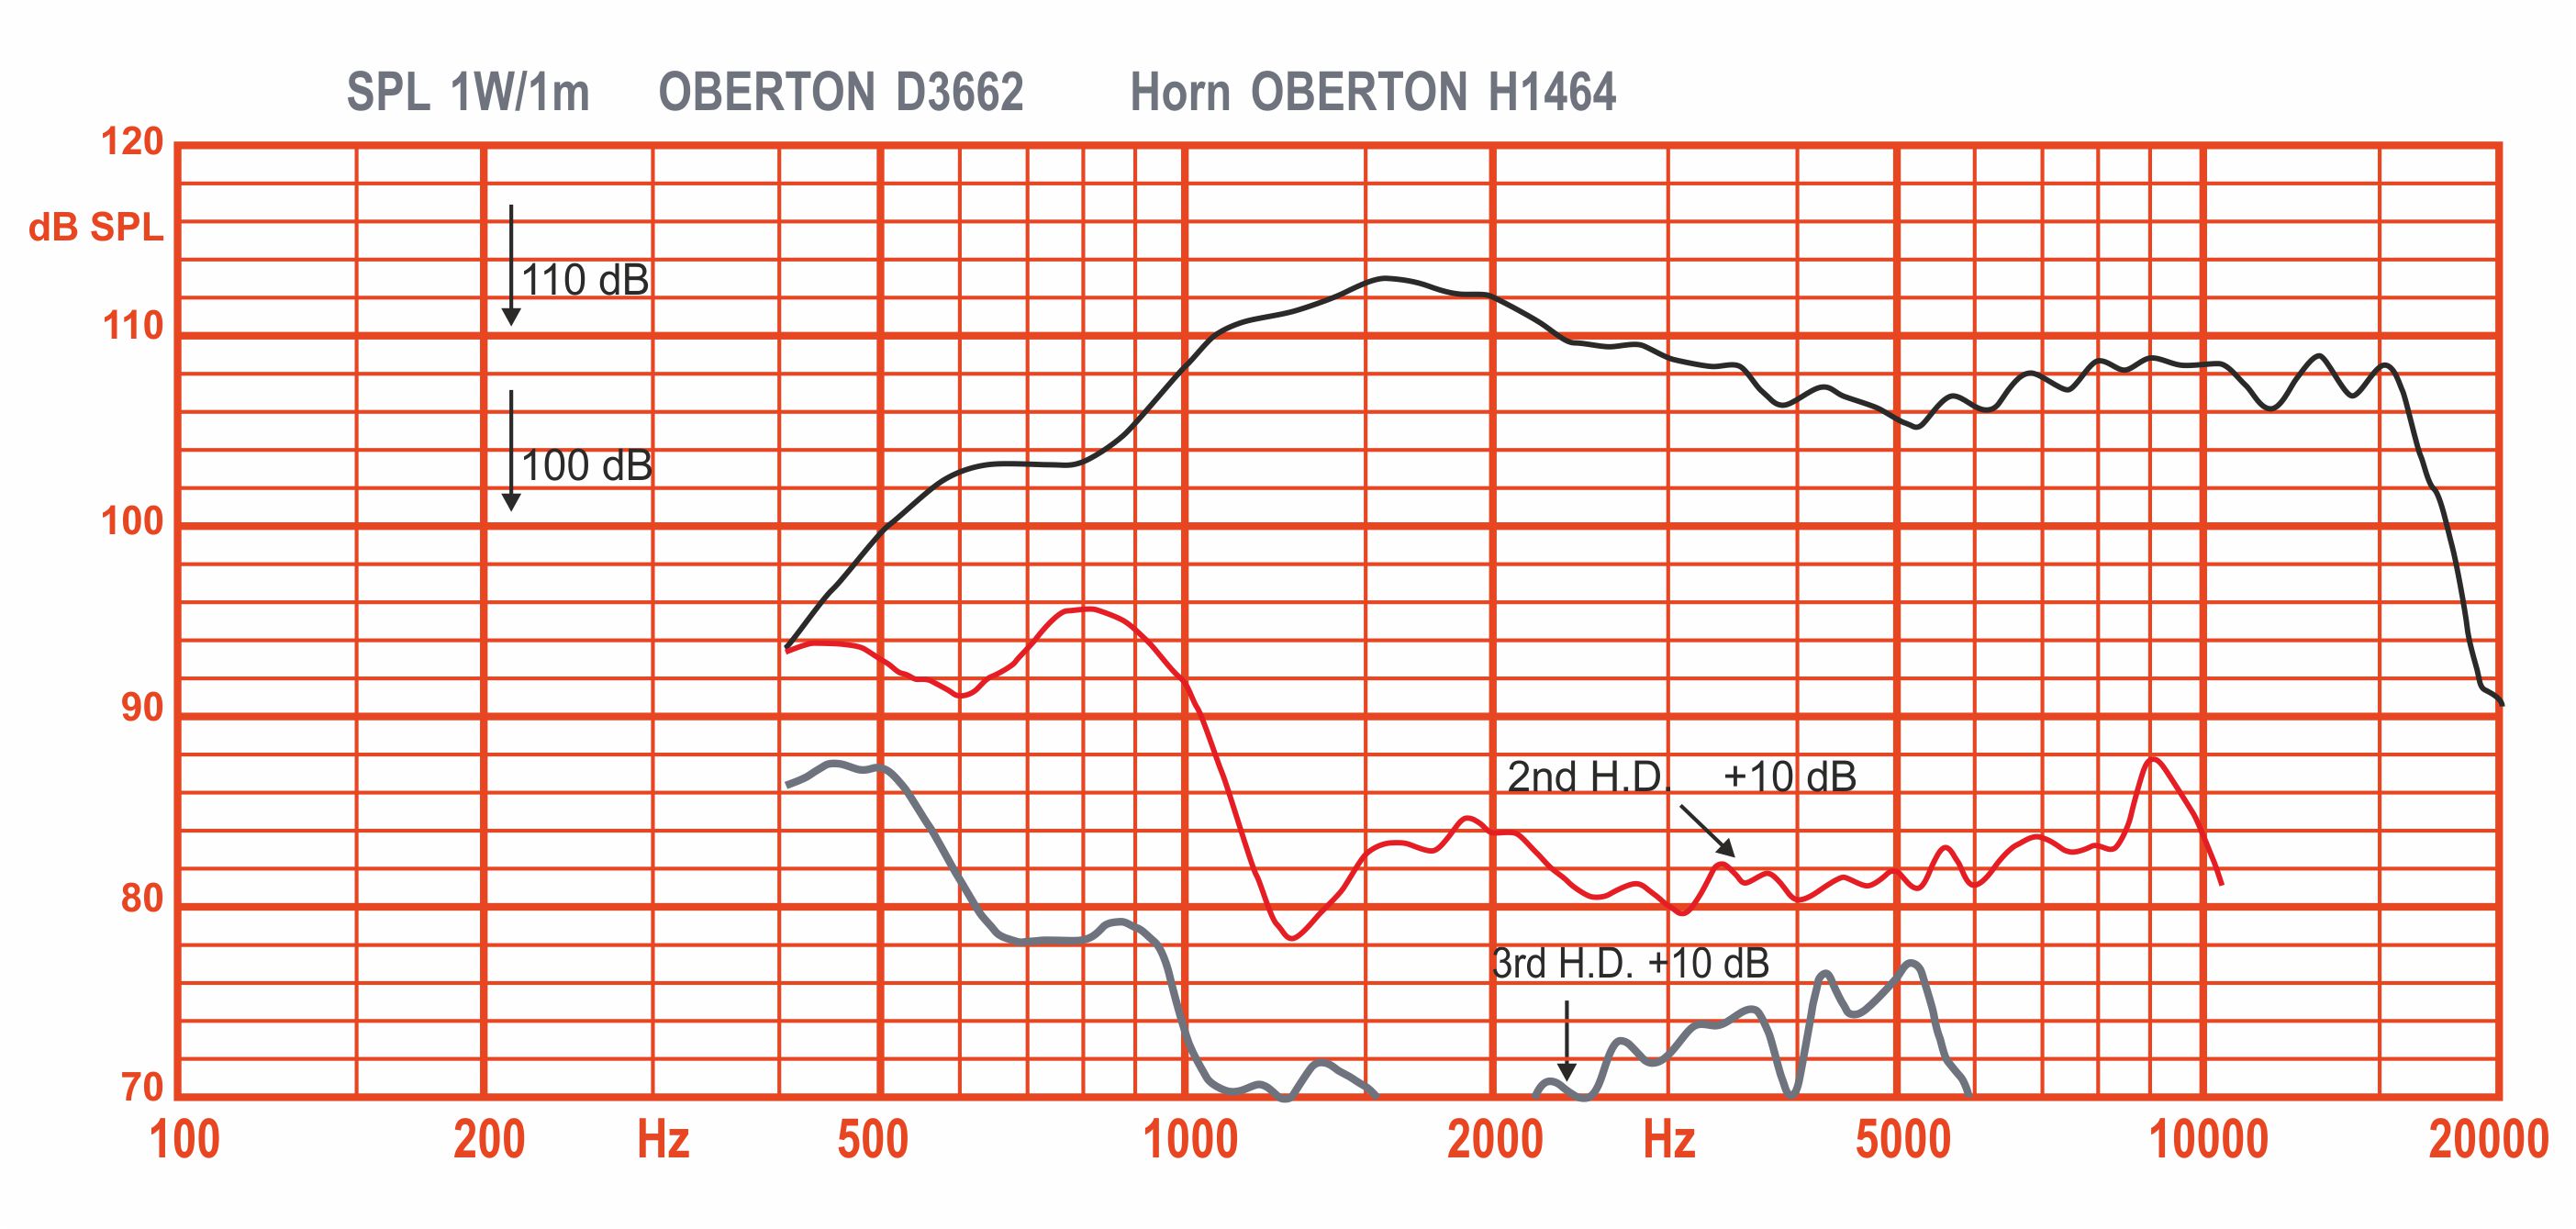 Oberton D3662